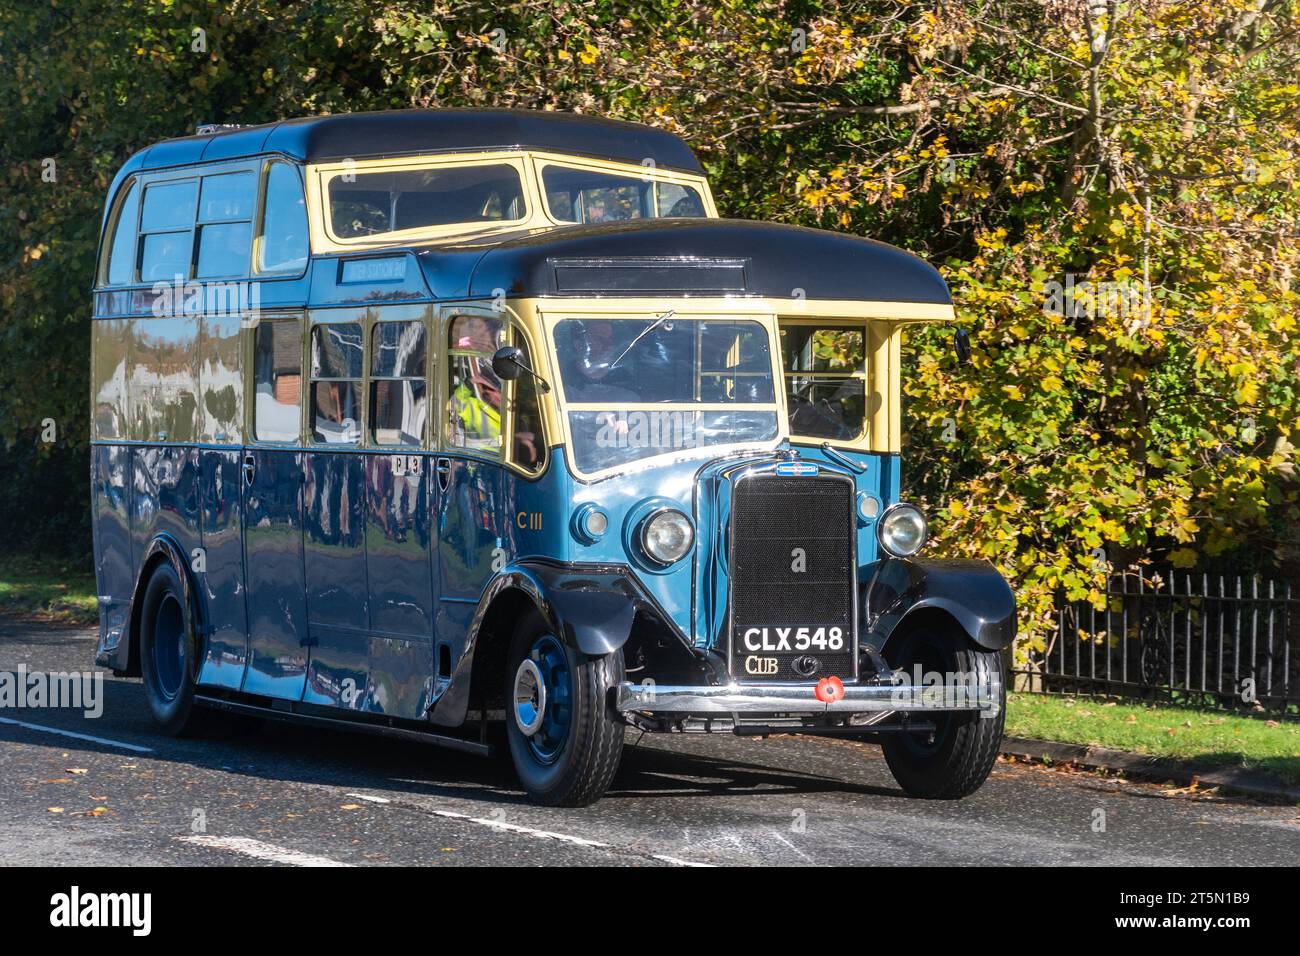 5 novembre 2023. Participants à la course de voitures vétérans de Londres à Brighton 2023 traversant le West Sussex, Angleterre, Royaume-Uni. Un ancien bus Leyland Cub SKPZ2 datant de 1936 en suivant le parcours. Banque D'Images